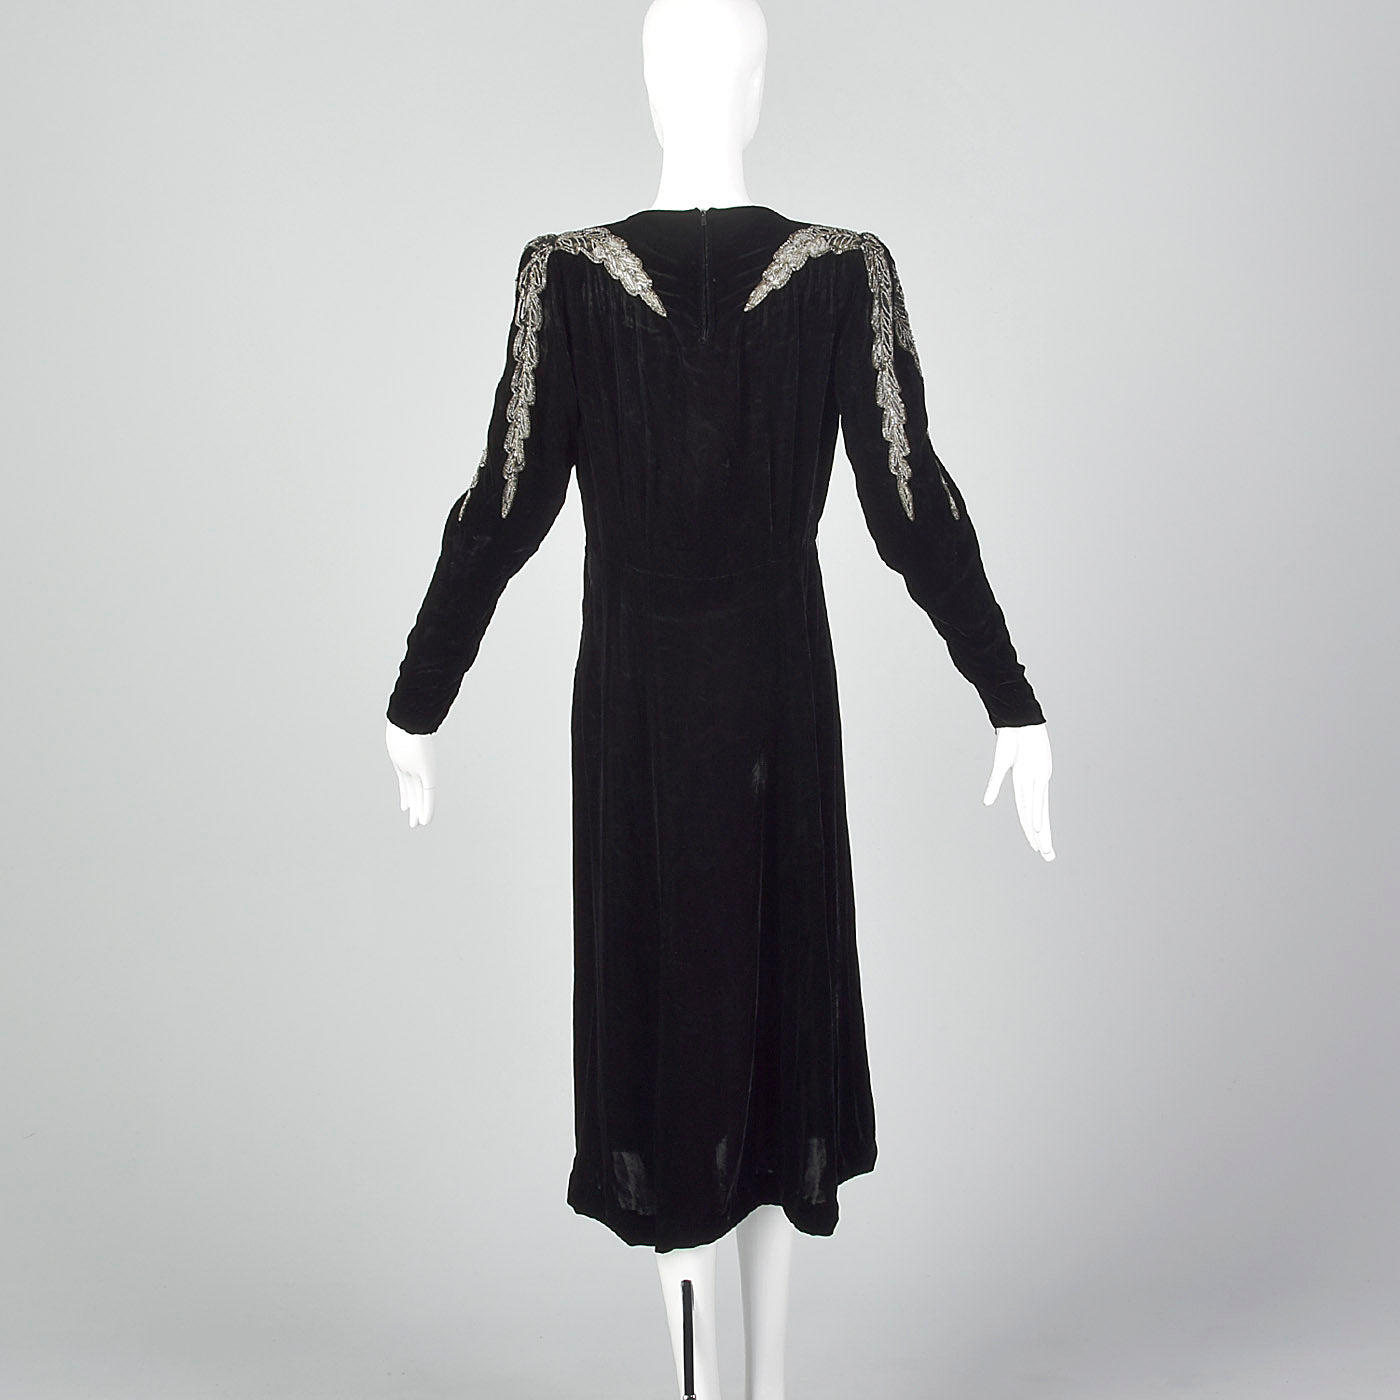 1940s Black Velvet Dress with Sheer Sleeve Design